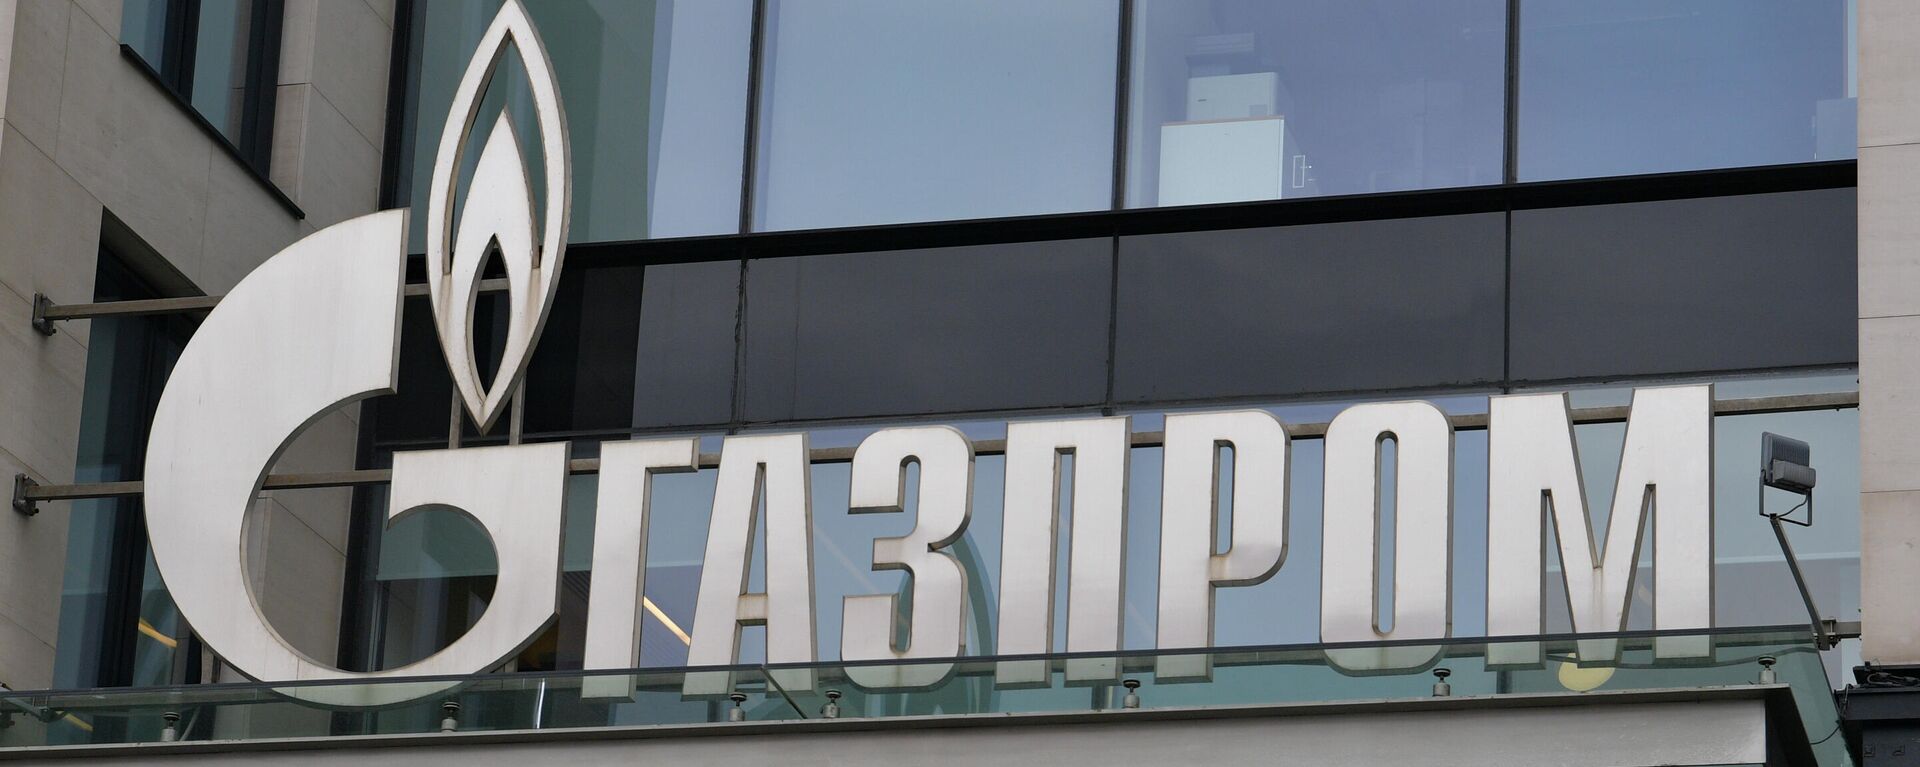 Логотип компании Газпром, архивное фото - Sputnik Литва, 1920, 28.10.2021